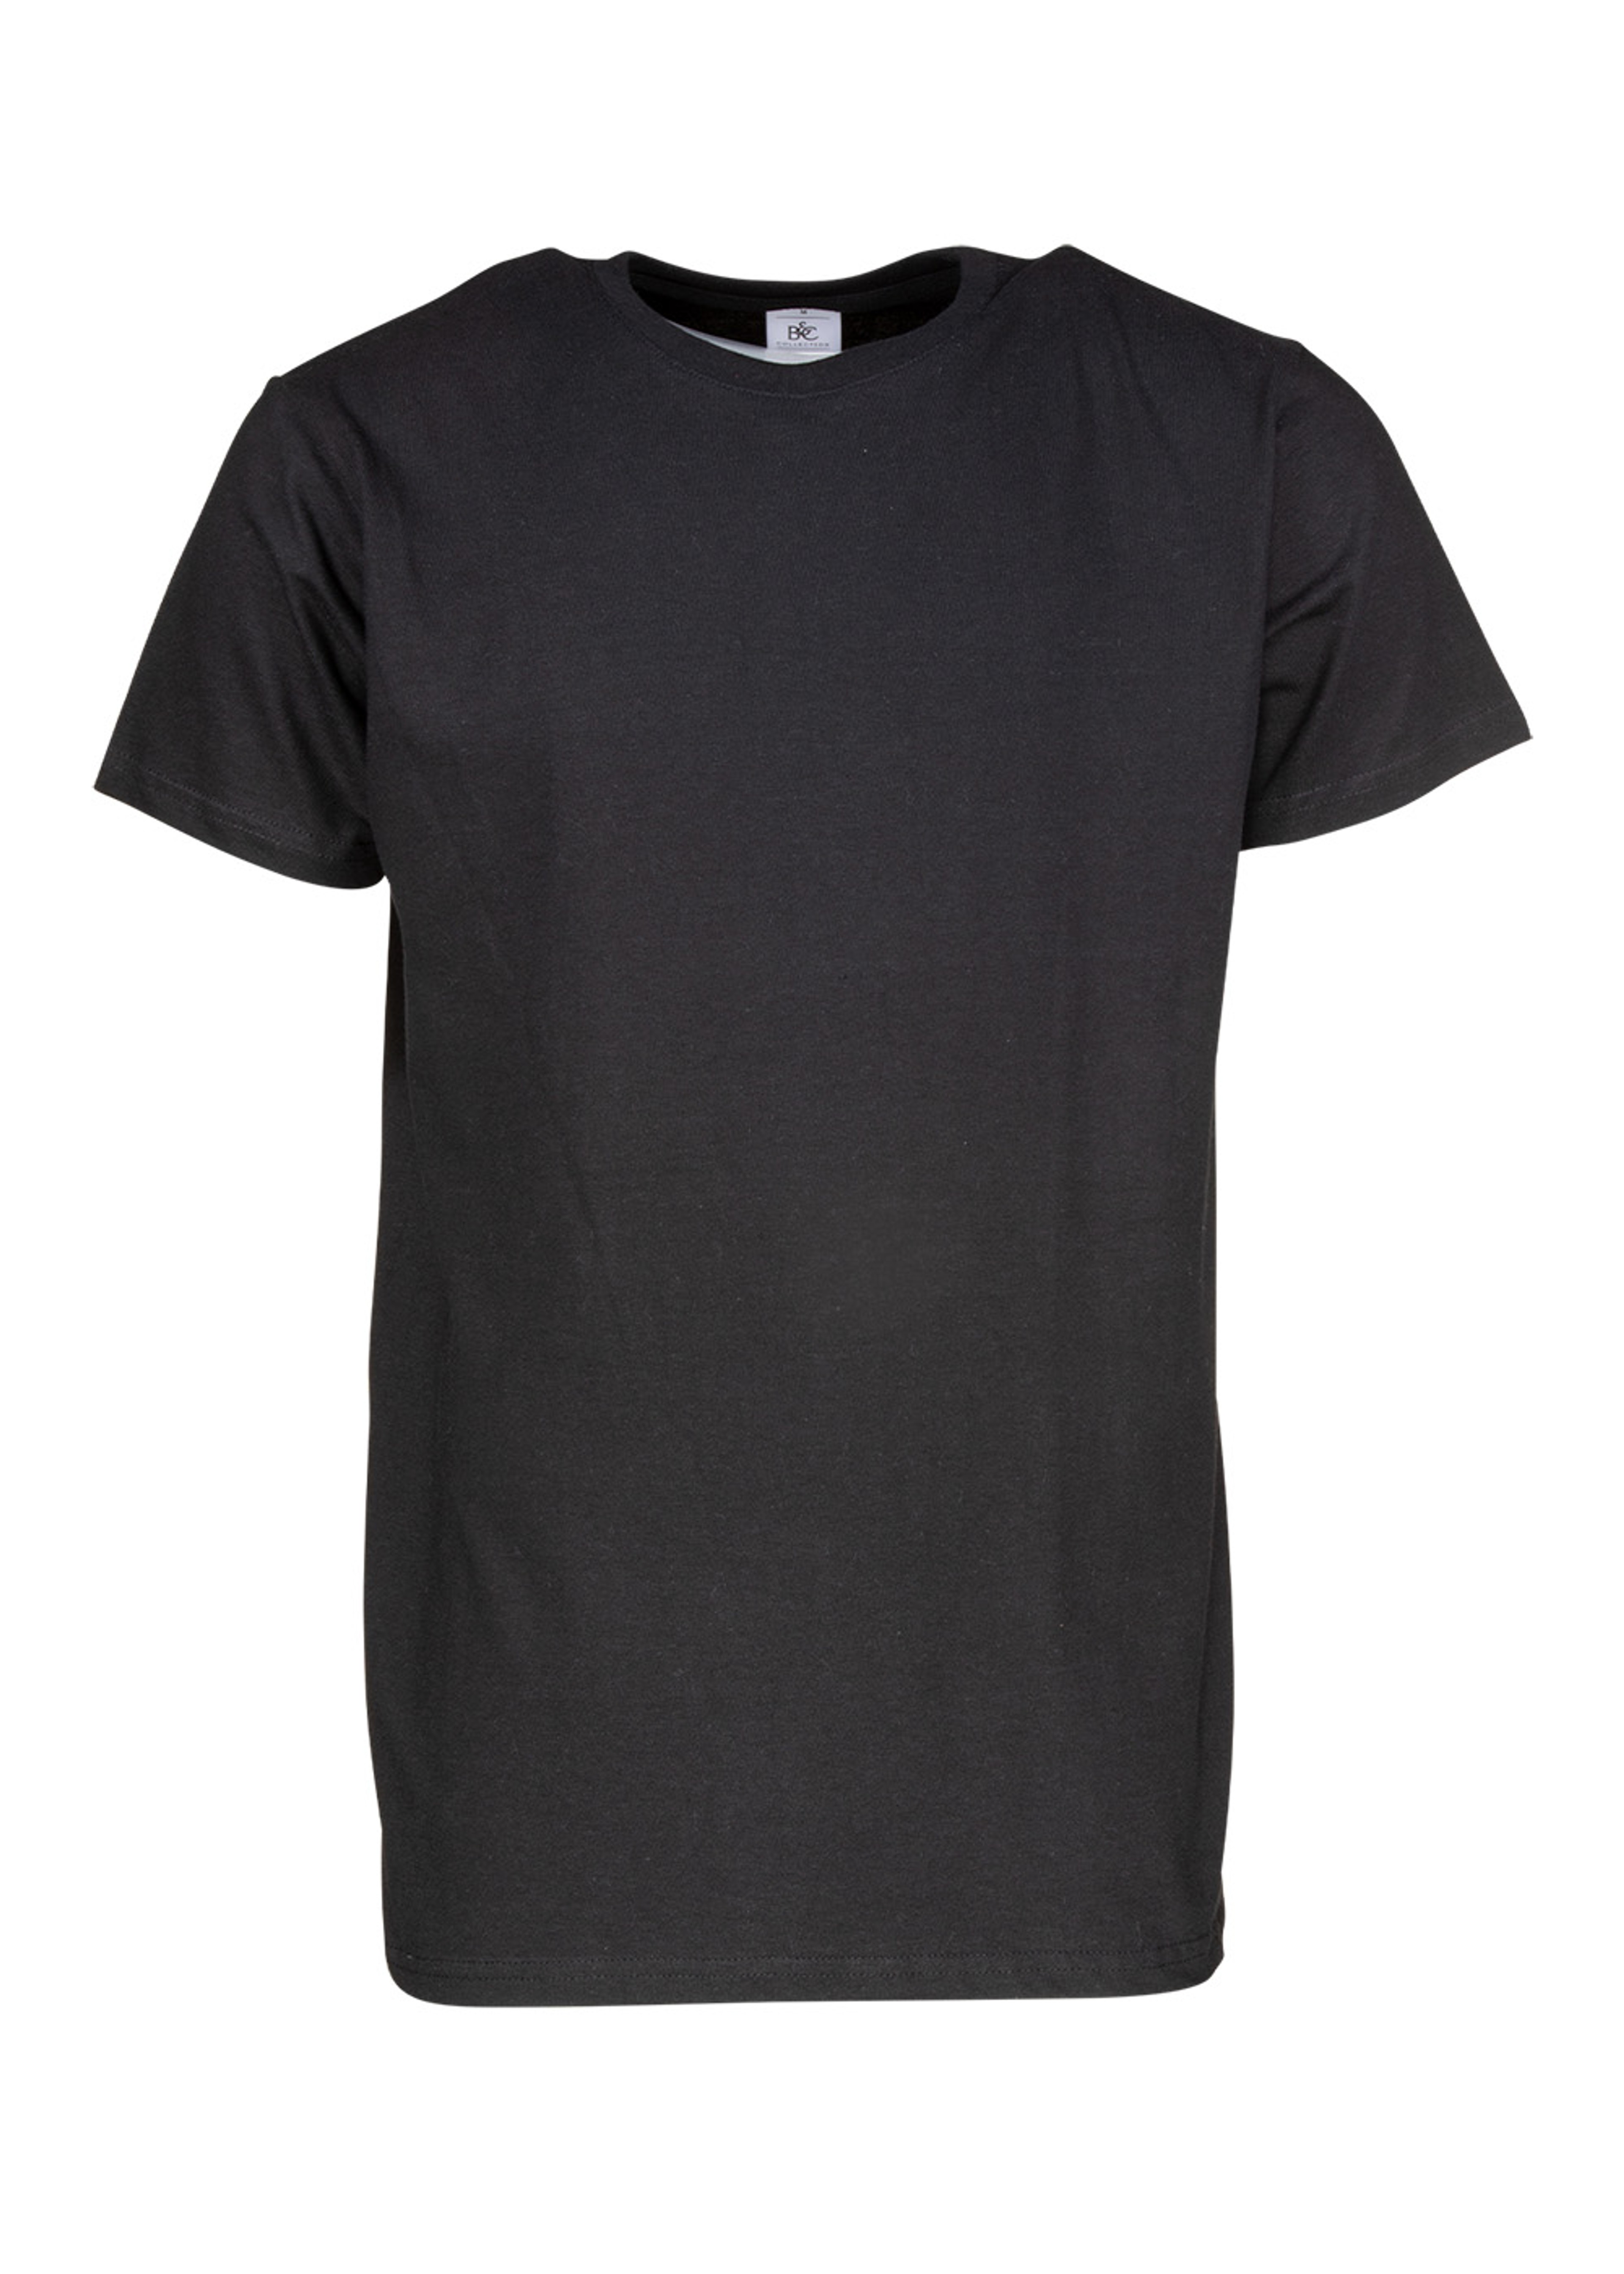 Premium Unisex T-shirt Black